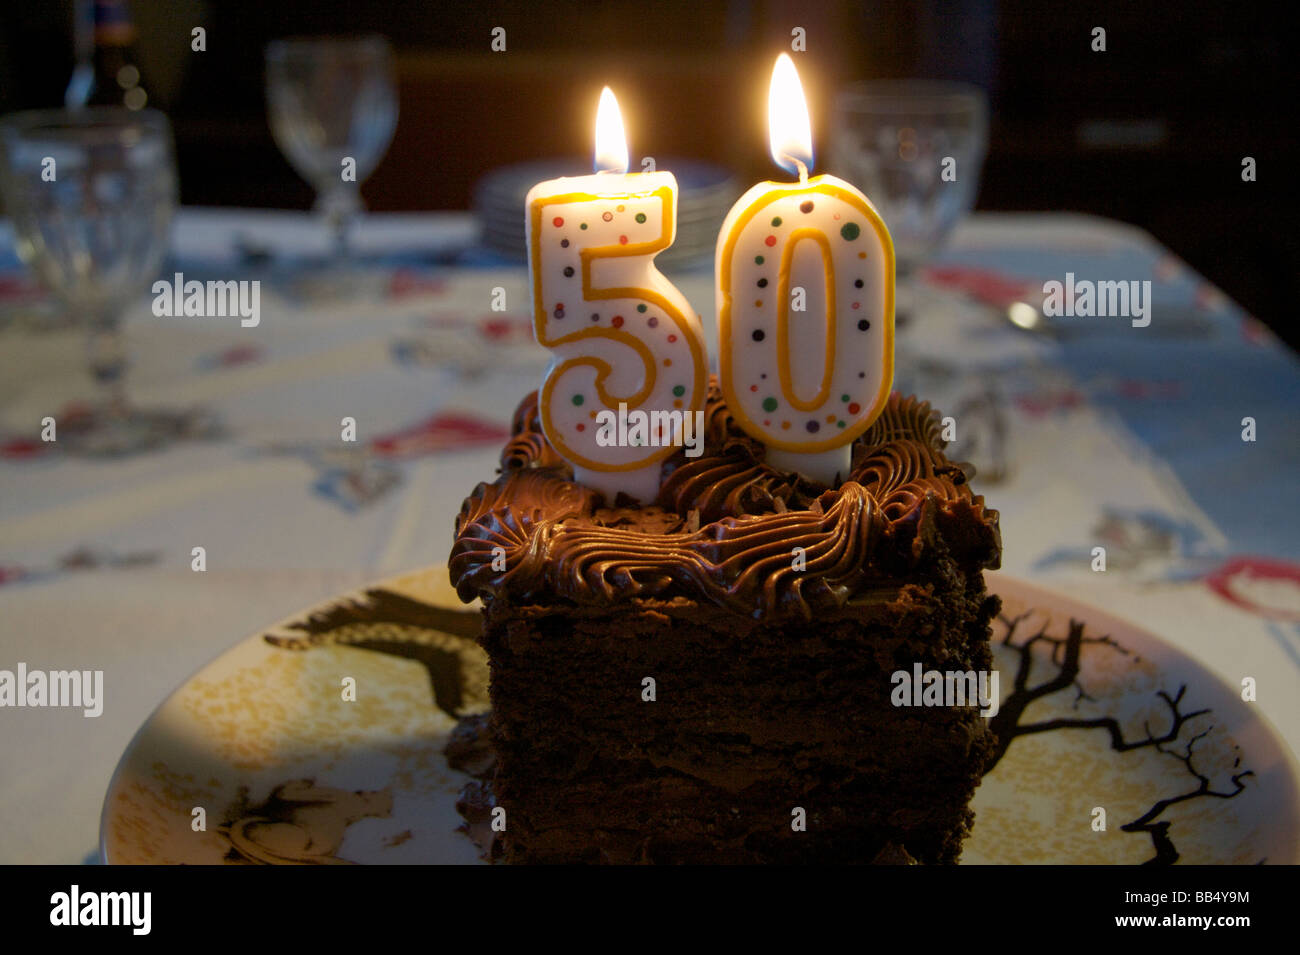  Velas de cumpleaños número 50 para tartas, velas con